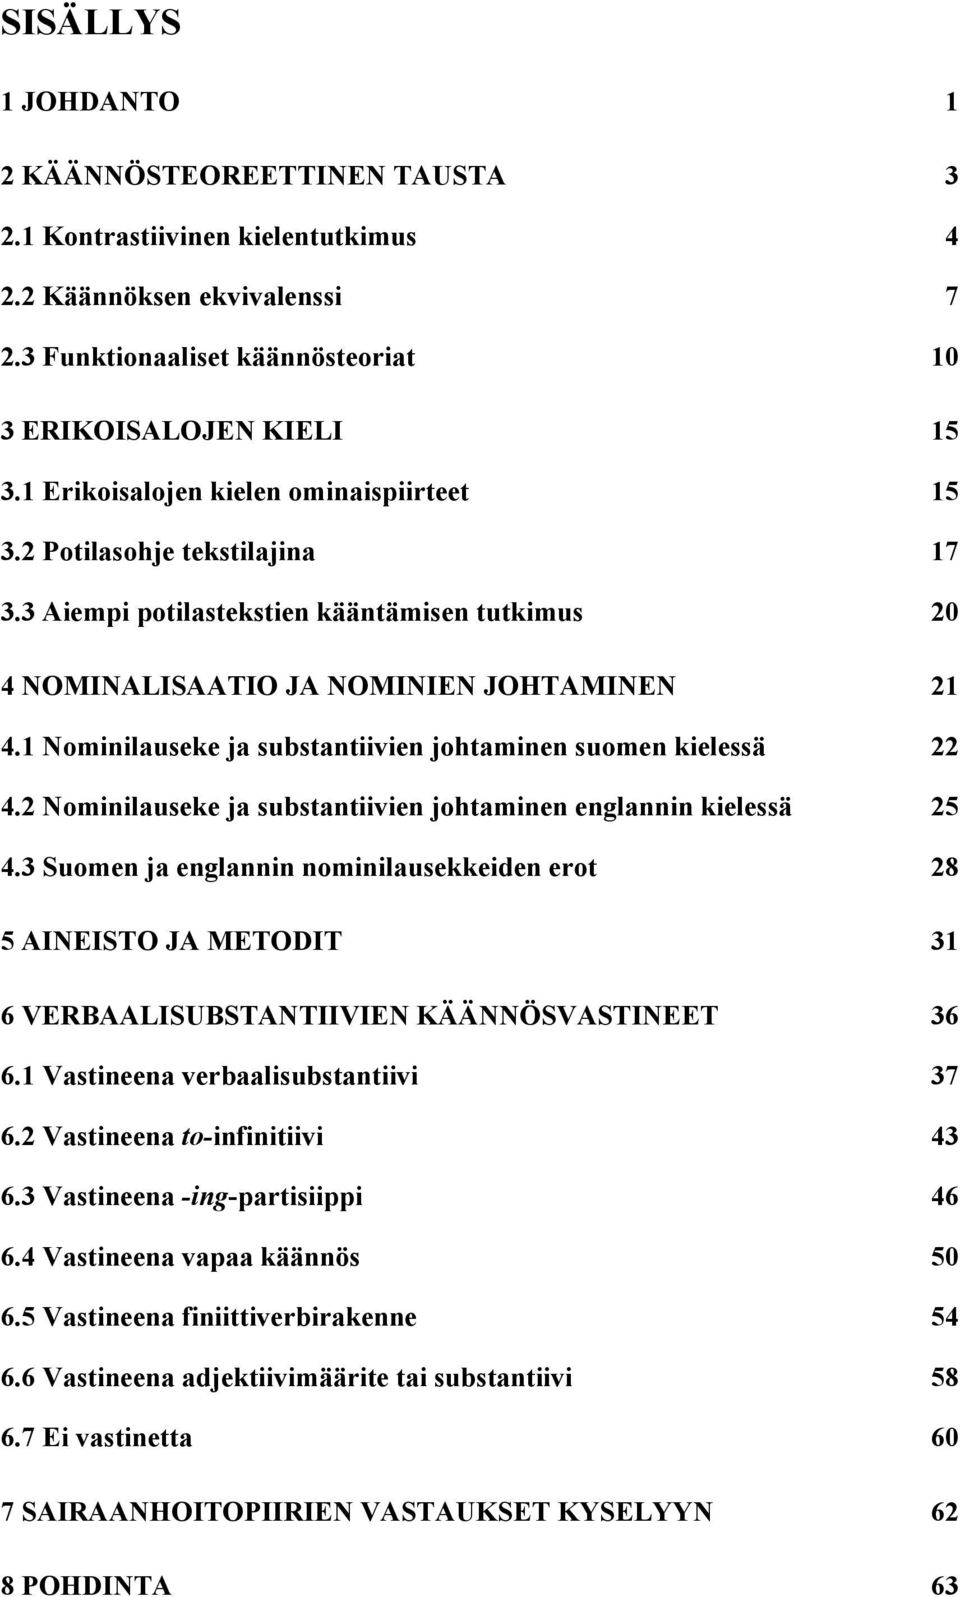 1 Nominilauseke ja substantiivien johtaminen suomen kielessä 22 4.2 Nominilauseke ja substantiivien johtaminen englannin kielessä 25 4.